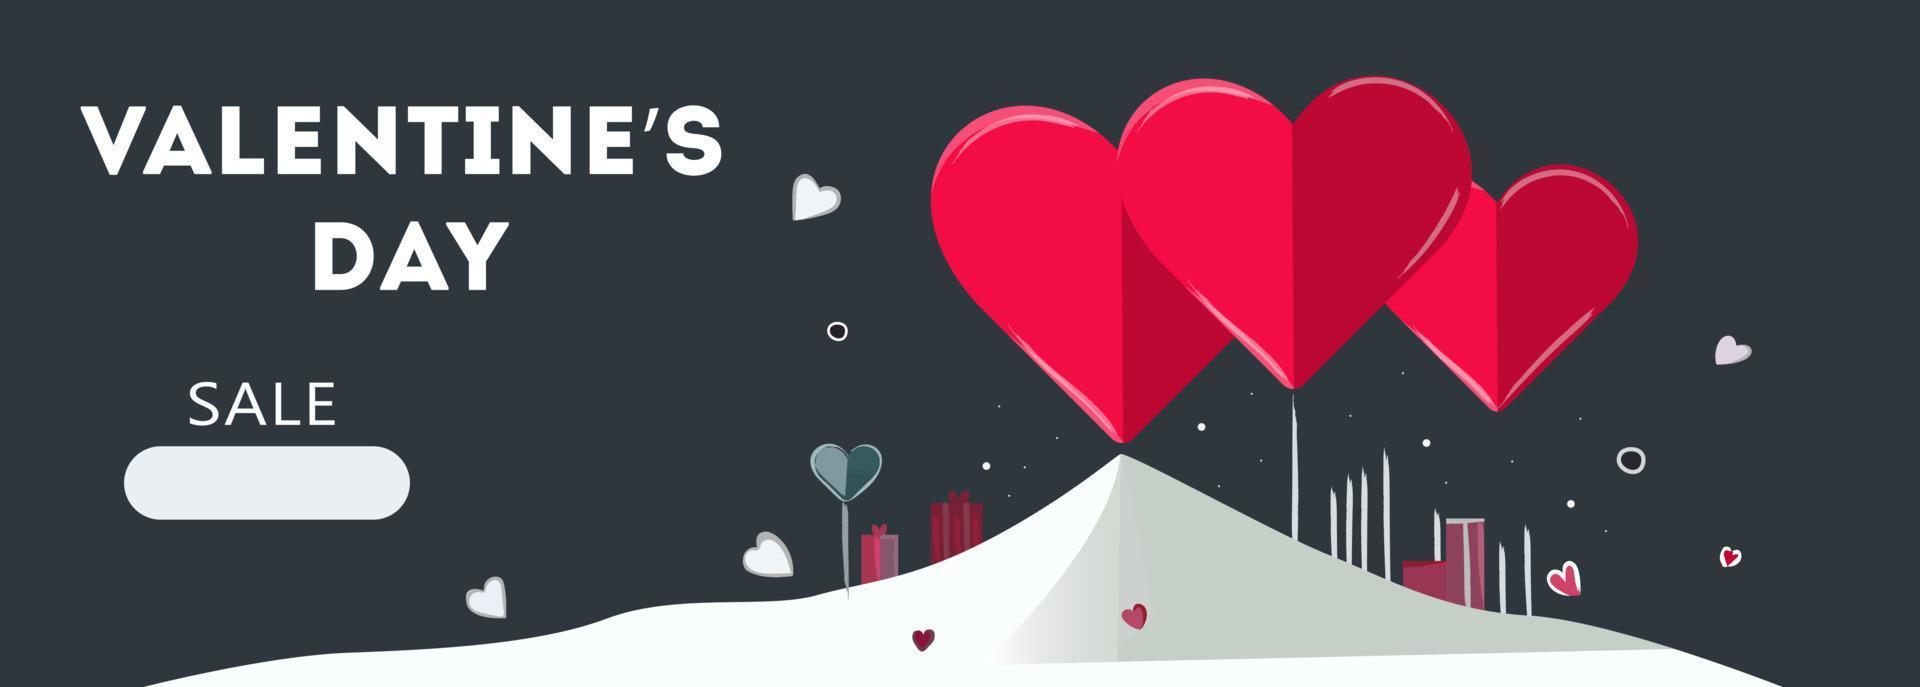 fondo de venta de san valentín composición romántica con corazones. ilustración vectorial para sitios web, carteles, anuncios, cupones, materiales promocionales. vector